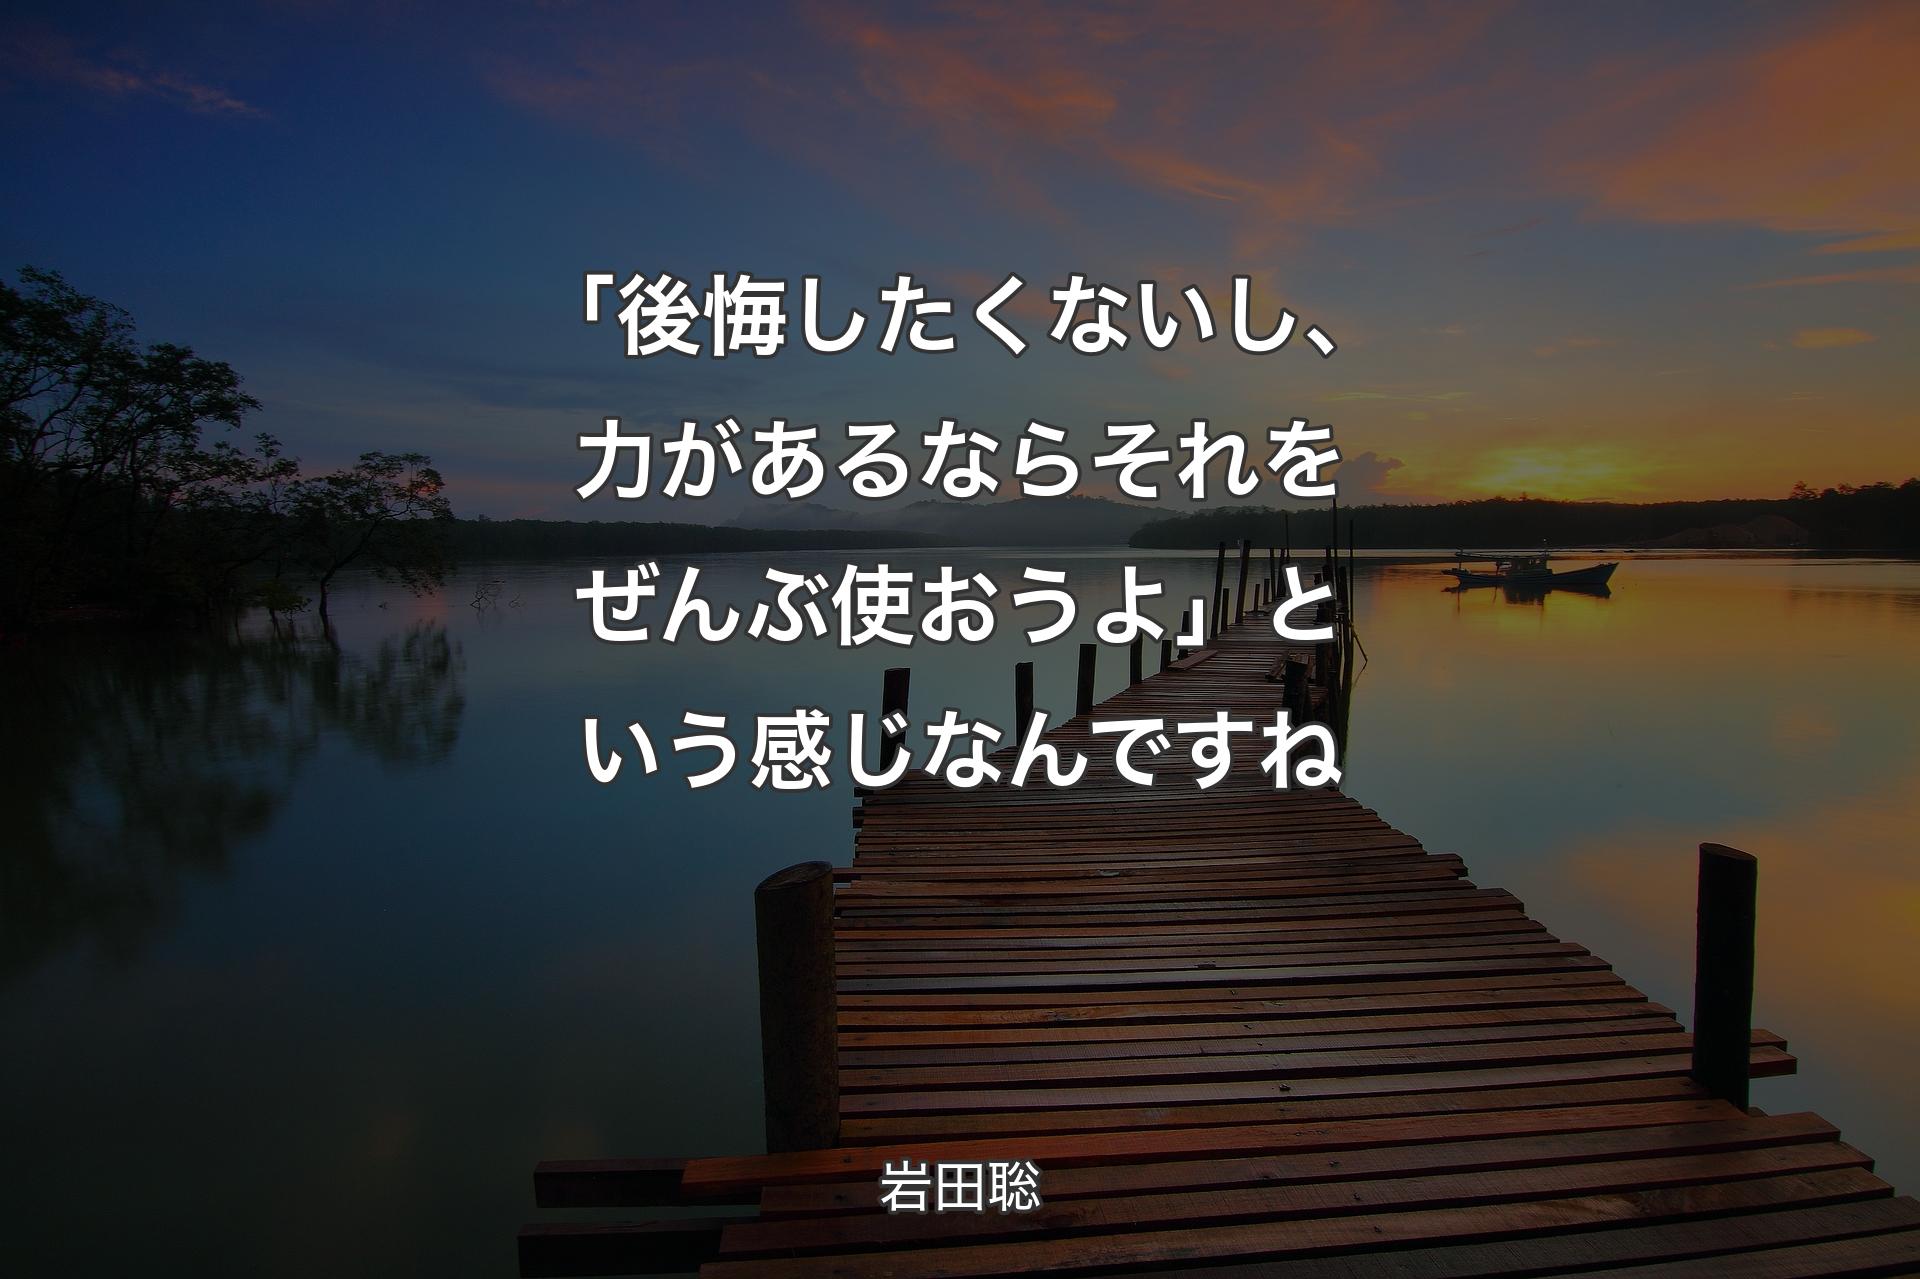 「後悔したくないし、力があるならそれをぜんぶ使おうよ」という感じなんですね - 岩田聡